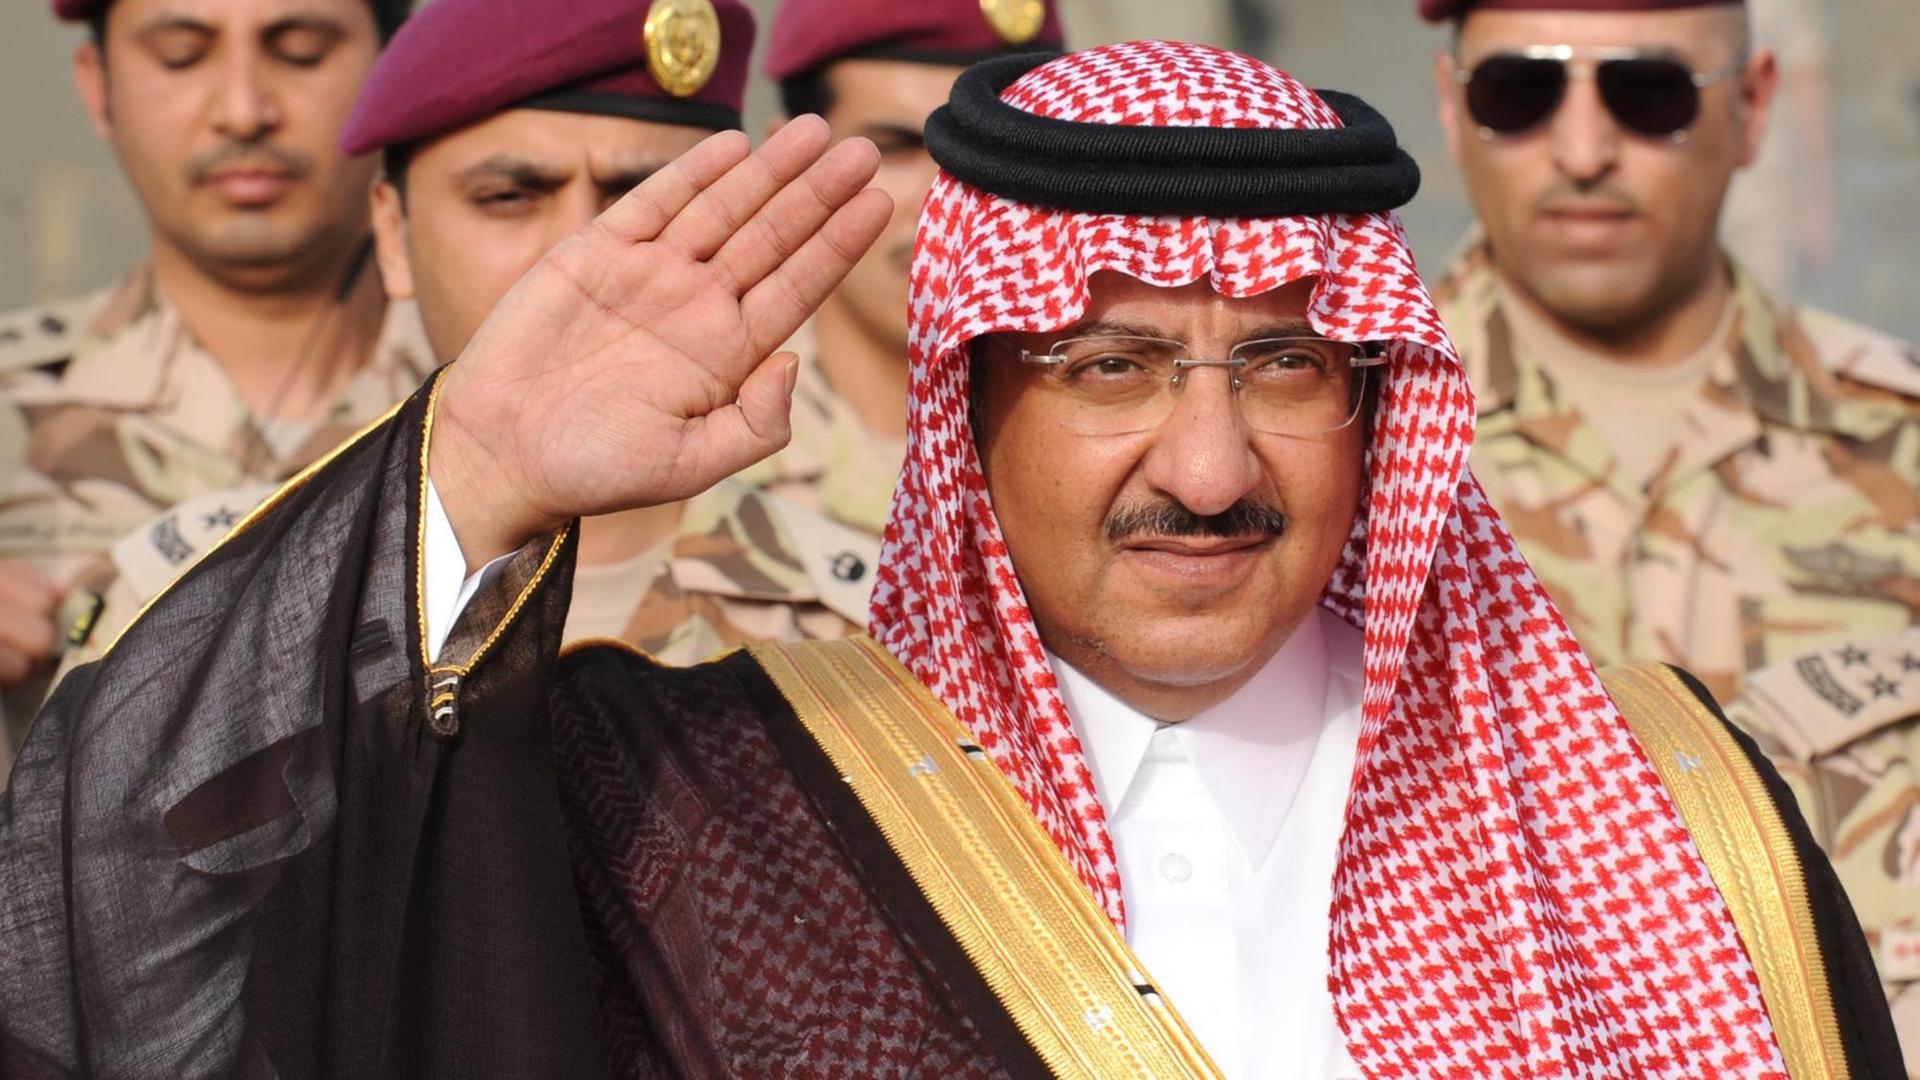 Prinz Mohammed bin Naif bin Abdulasis al-Saud, Innenminister von Saudi-Arabien, mit der rechten Hand grüßend, im Hintergrund Soldaten.